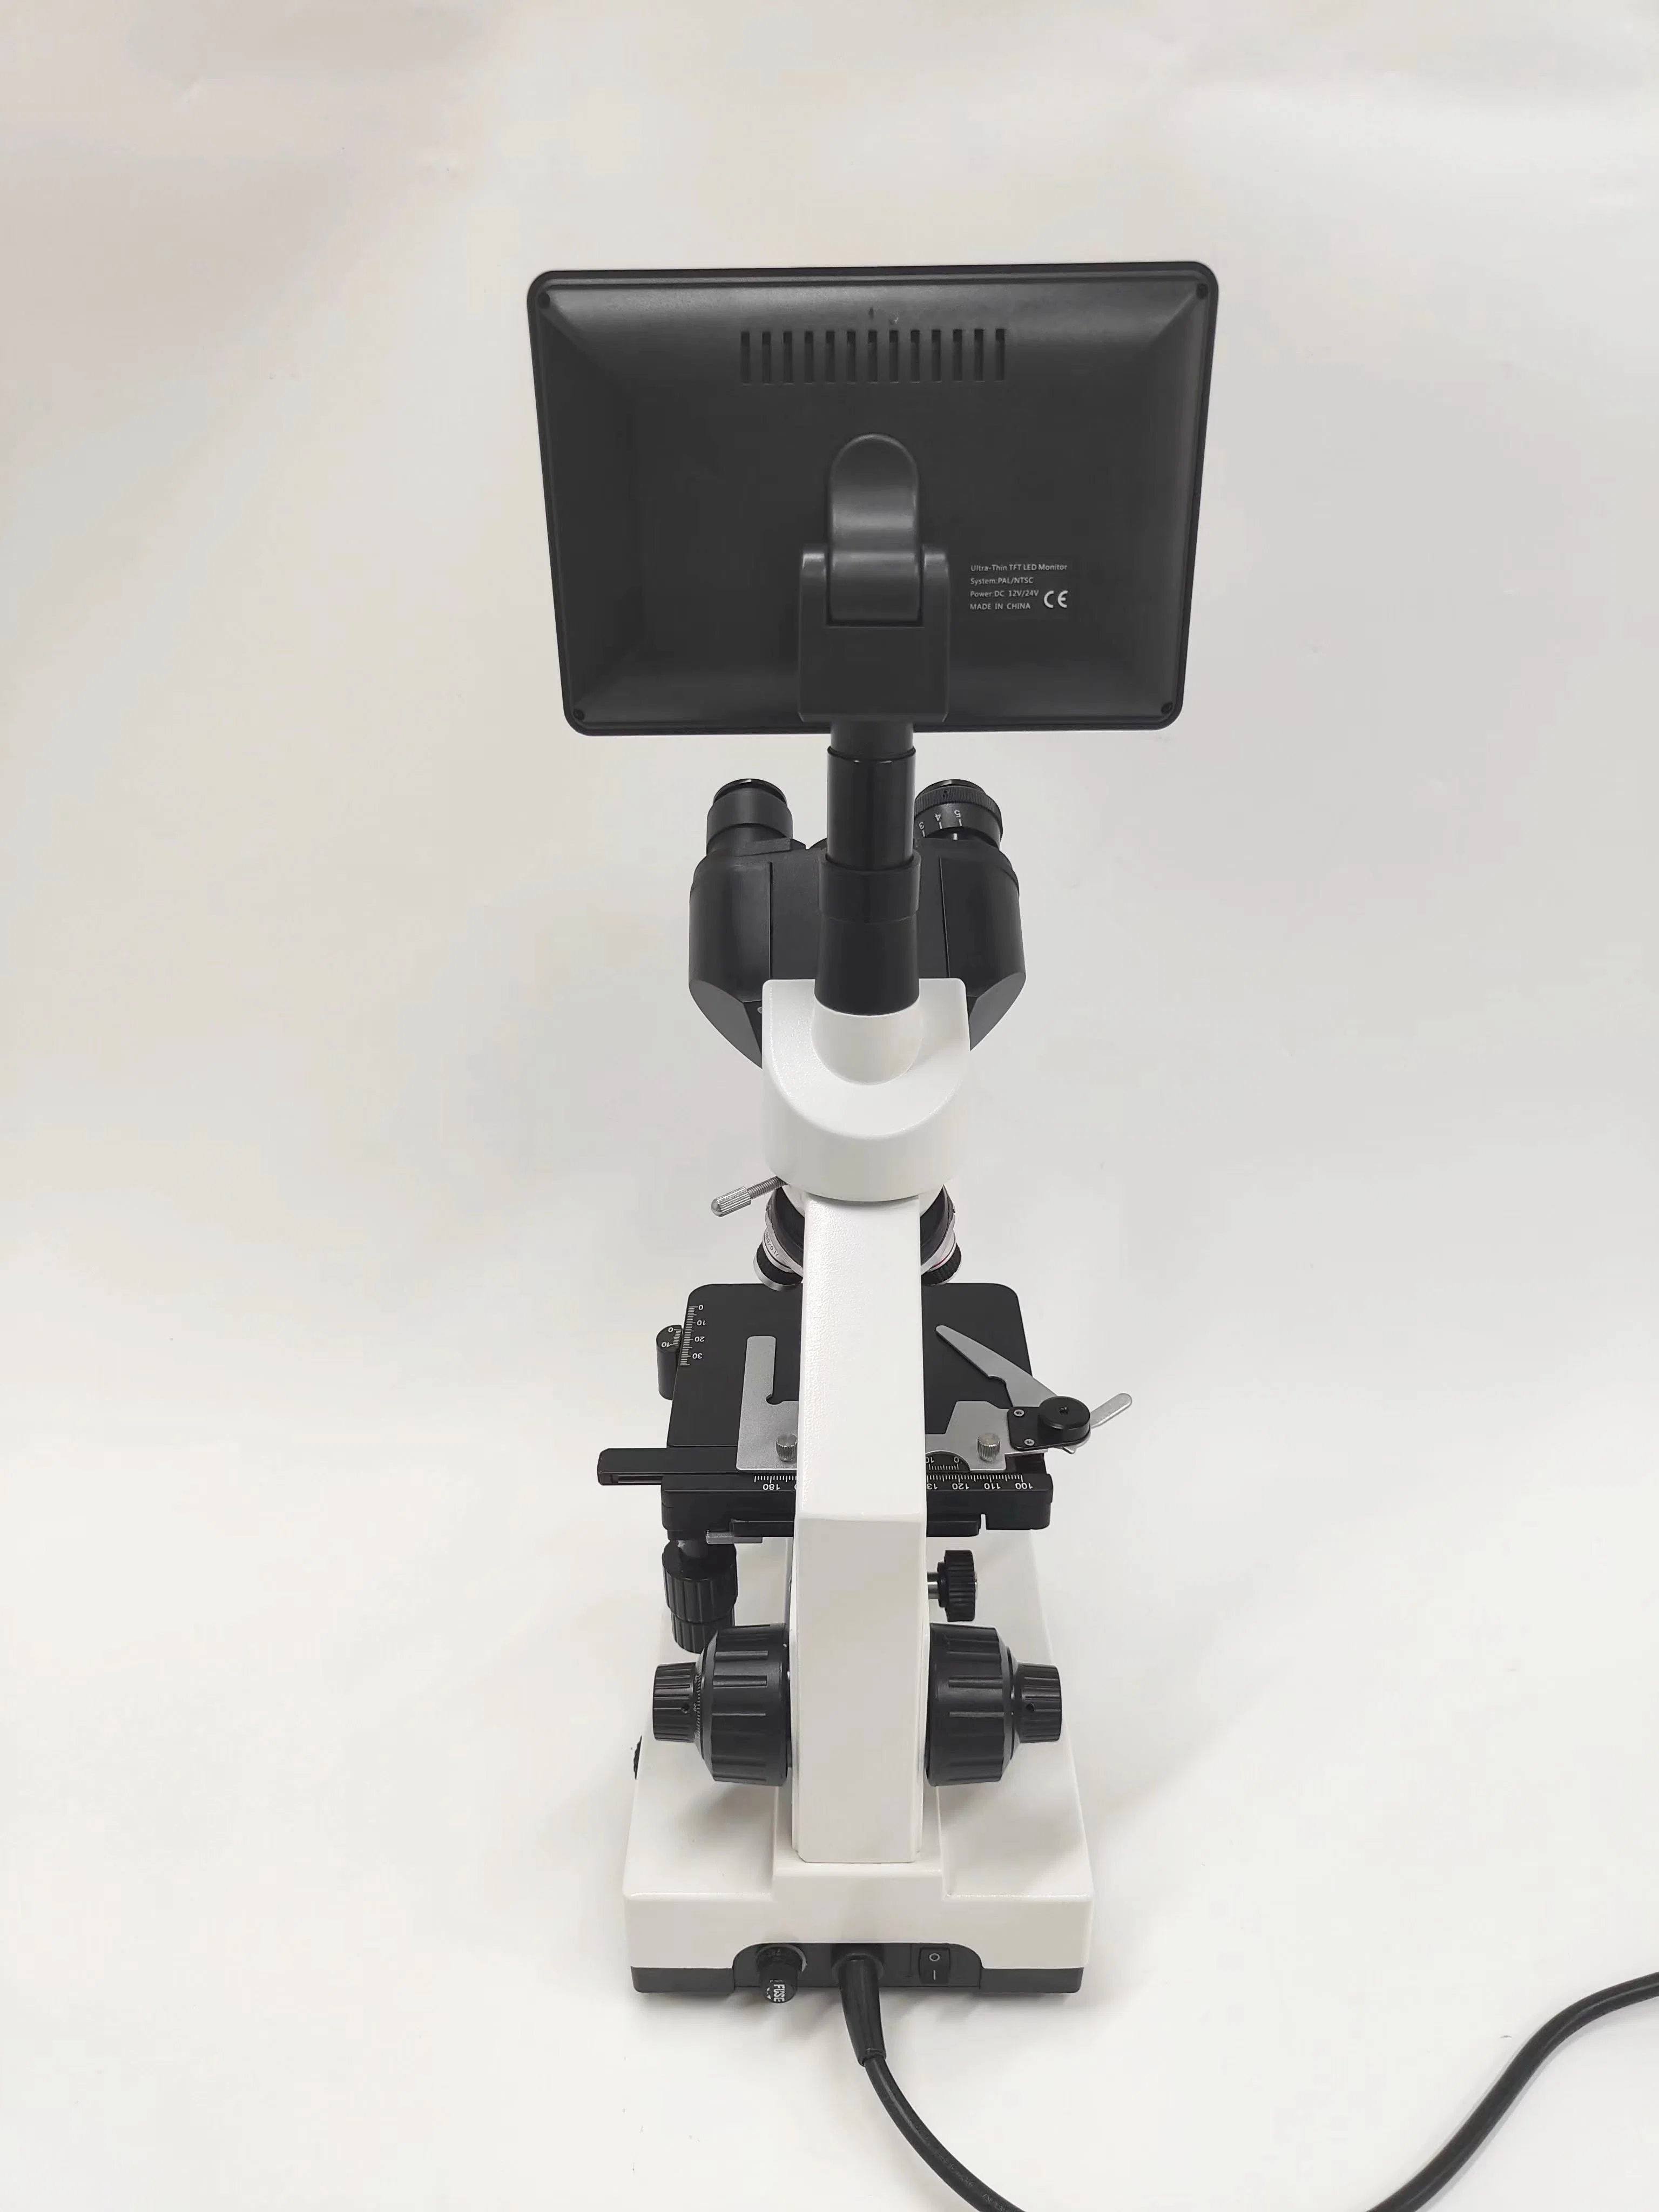 XSP-100sm Professionelles Trinokulares Display digitales medizinisches Videomikroskop für das Labor Klinik Krankenhaus